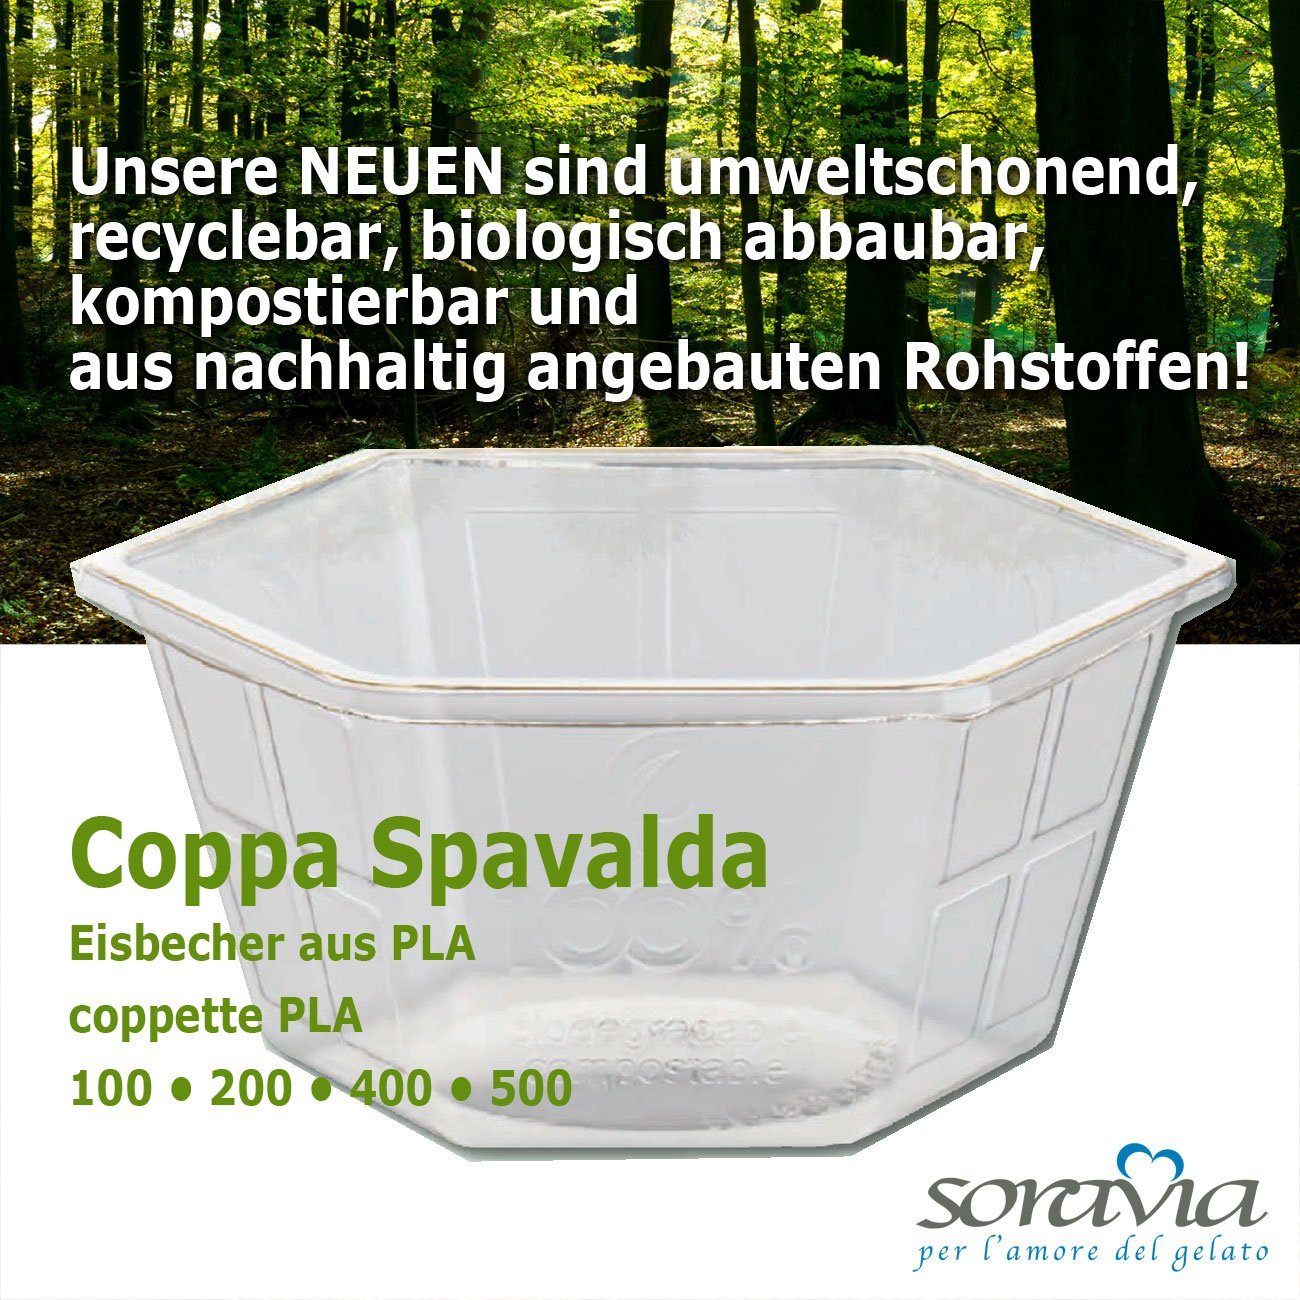 Coppa Spavalda 200 - Karton 1600 Stück -   Eisbecher aus biologisch abbaubarem Plastik 